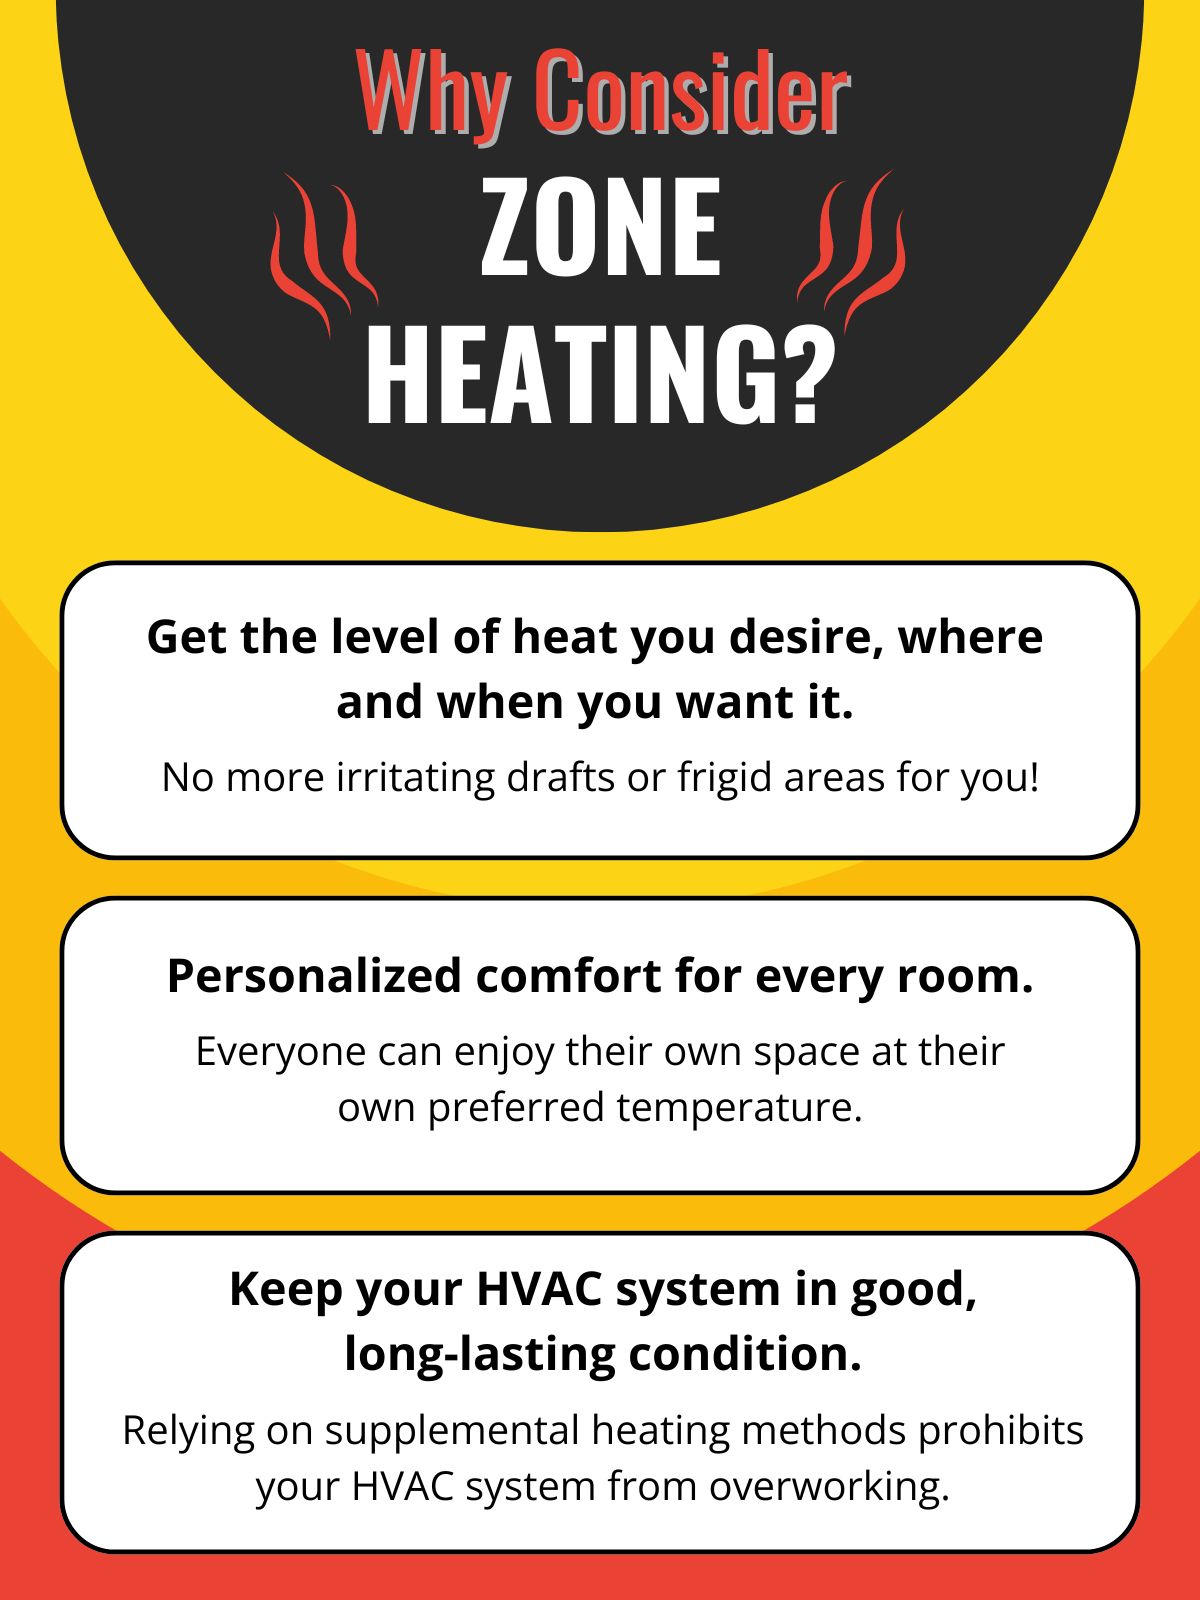 original infographic describing benefits of zone heating